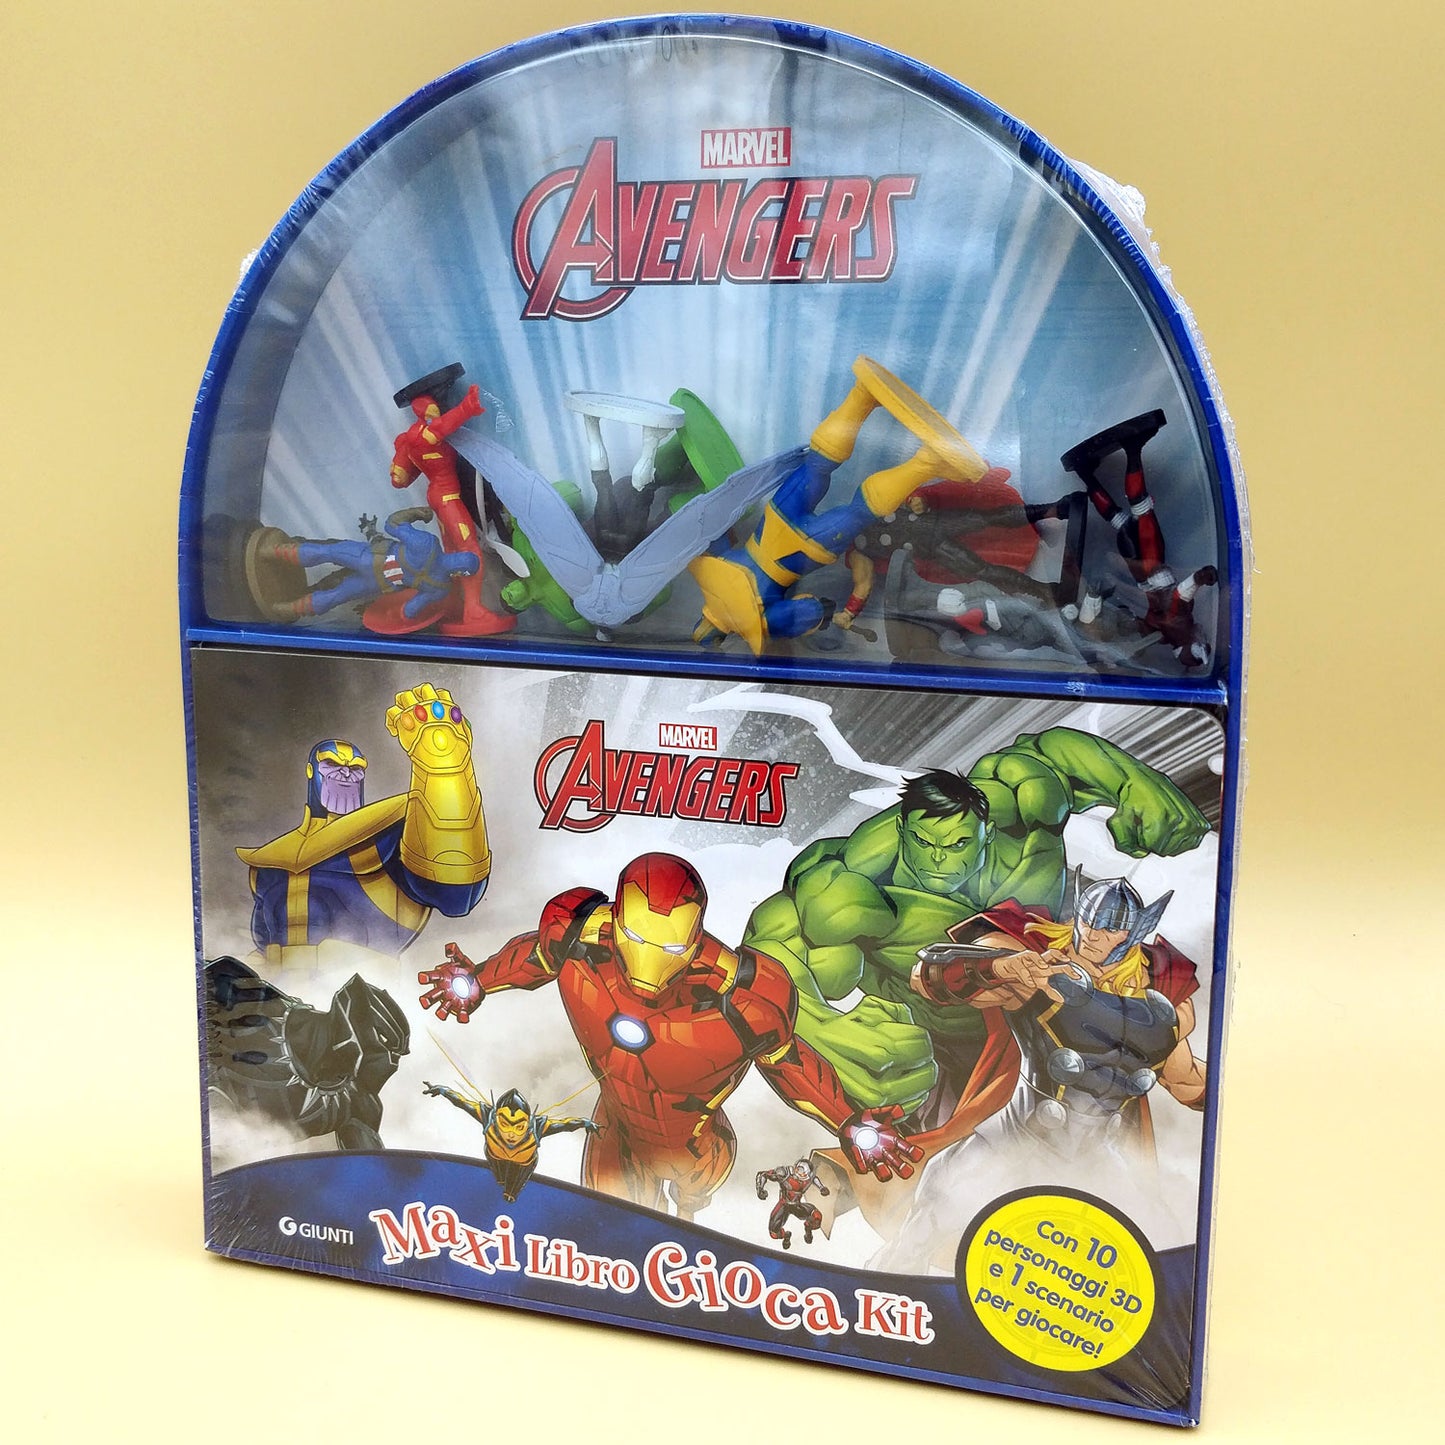 Avengers - Maxi LibroGiocaKit. Con 10 personaggi 3D e 1 scenario per giocare!